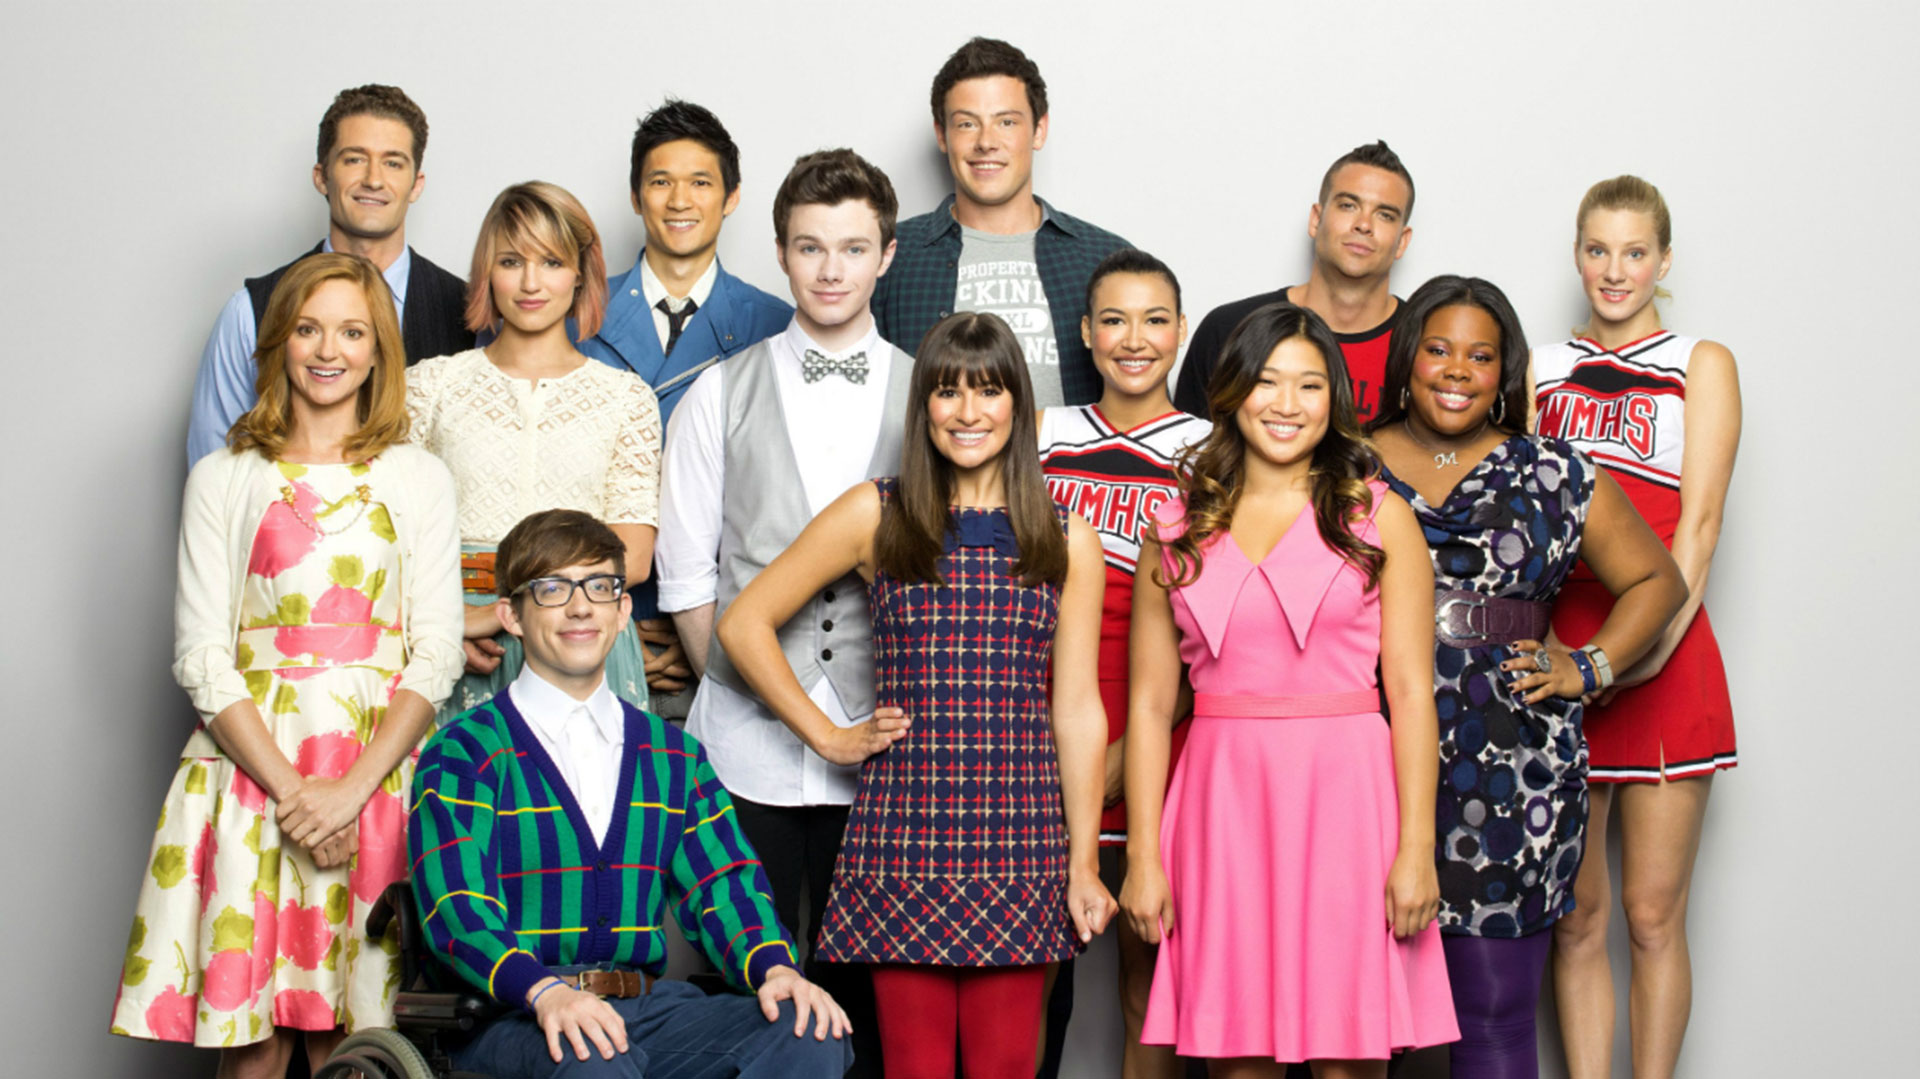 Actores de “Glee” expusieron el infierno que les hizo vivir la actriz Lea Michele